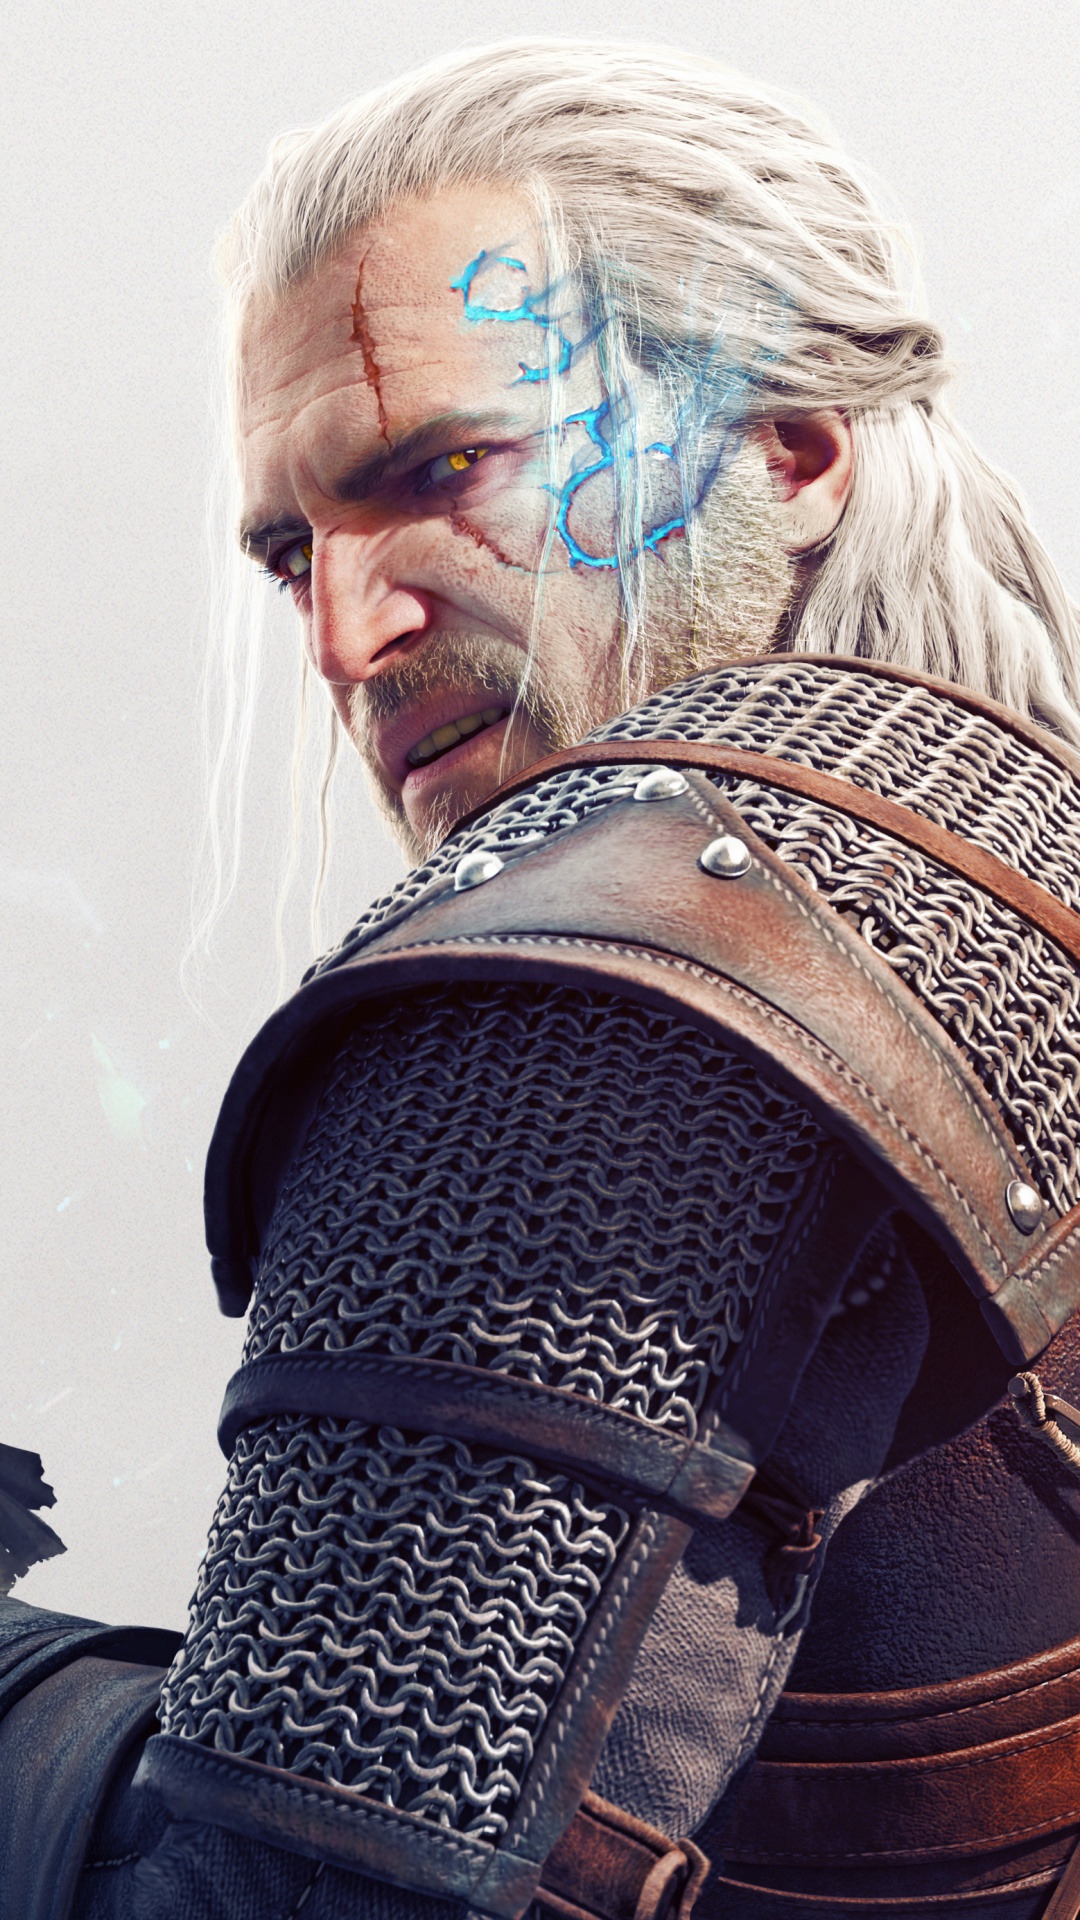 The Witcher 3 Wild Hunt, Geralt of Rivia, Beard, Facial Hair, Musician. Wallpaper in 1080x1920 Resolution